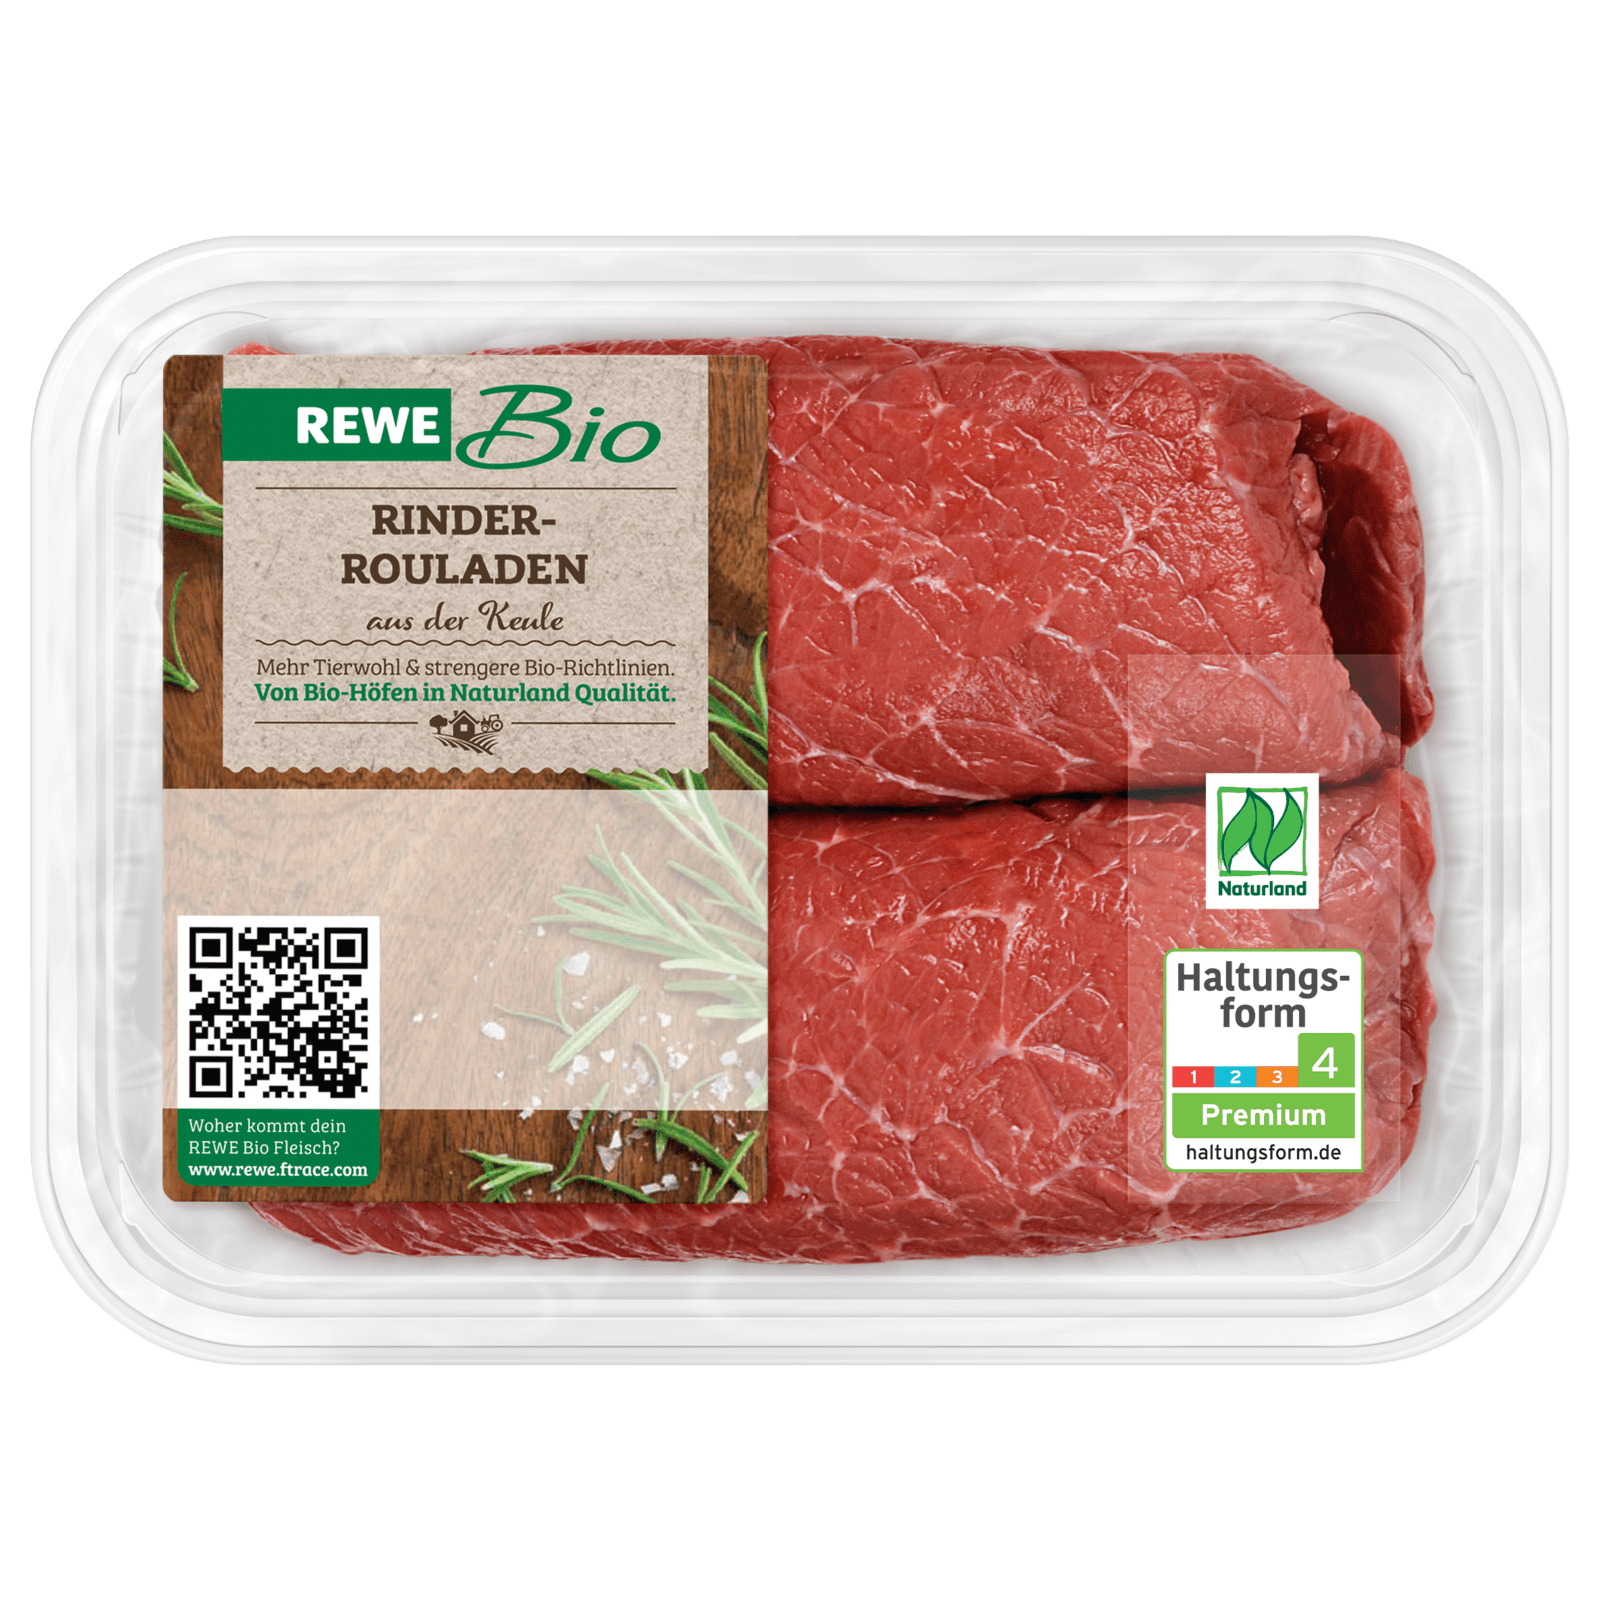 REWE Bio Rinderrouladen aus der Keule 300g  für 9.27 EUR